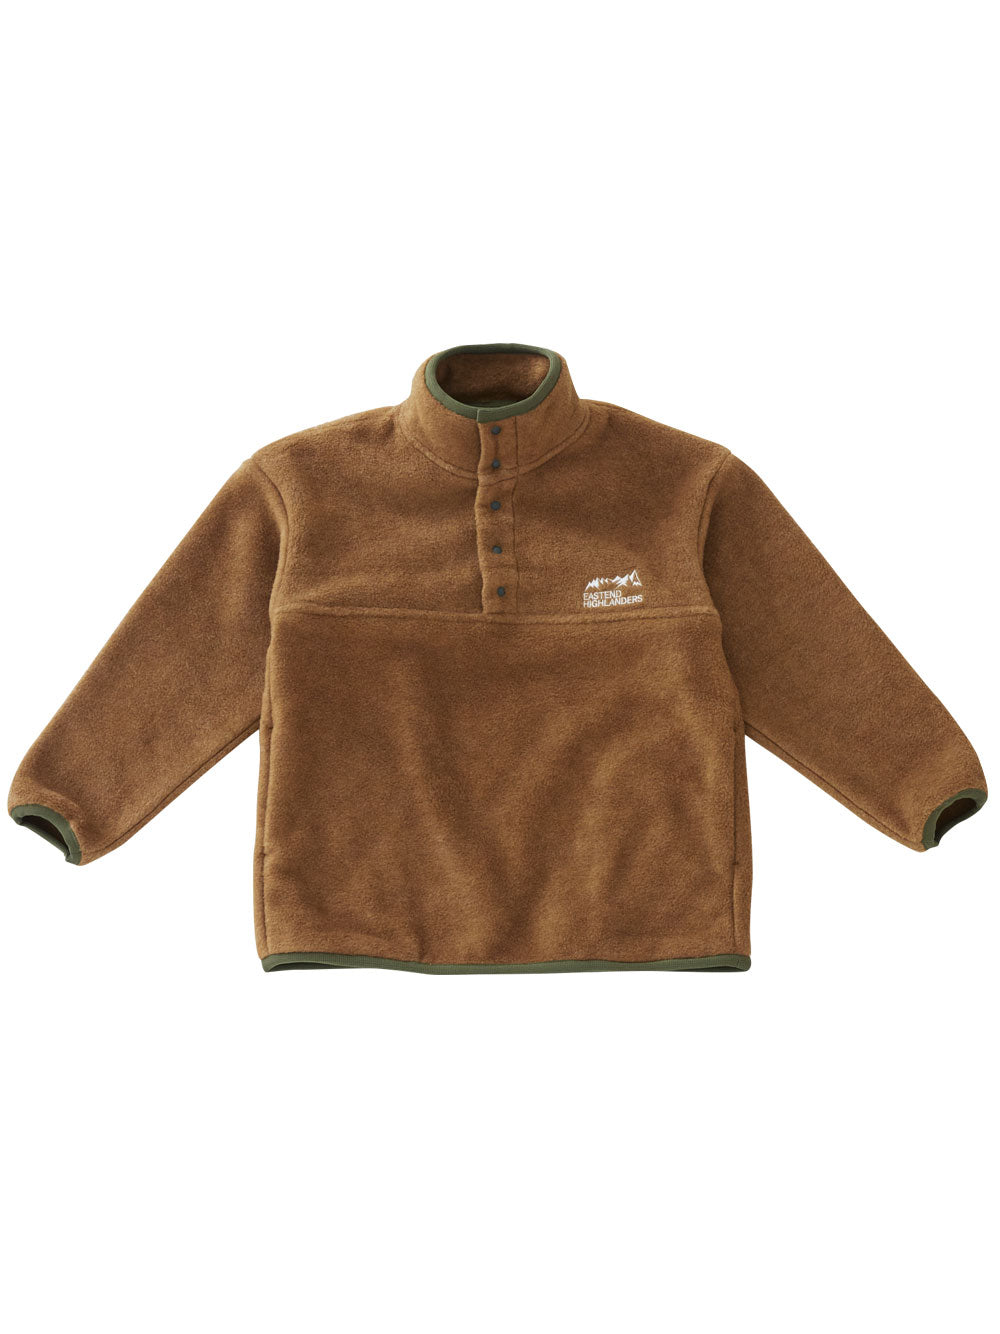 Brown Classic Outdoor Jacket